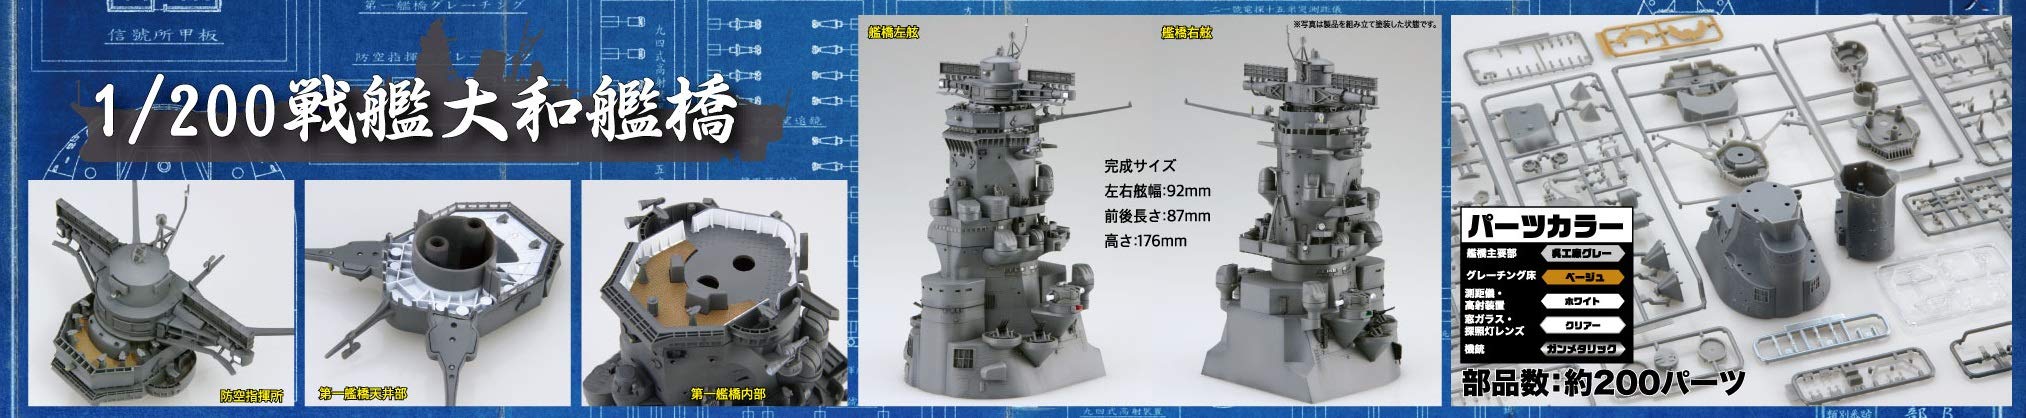 Fujimi Model 1/200 Equipment Series No.2 Battleship Yamato Bridge Plastic Model Equipment 2